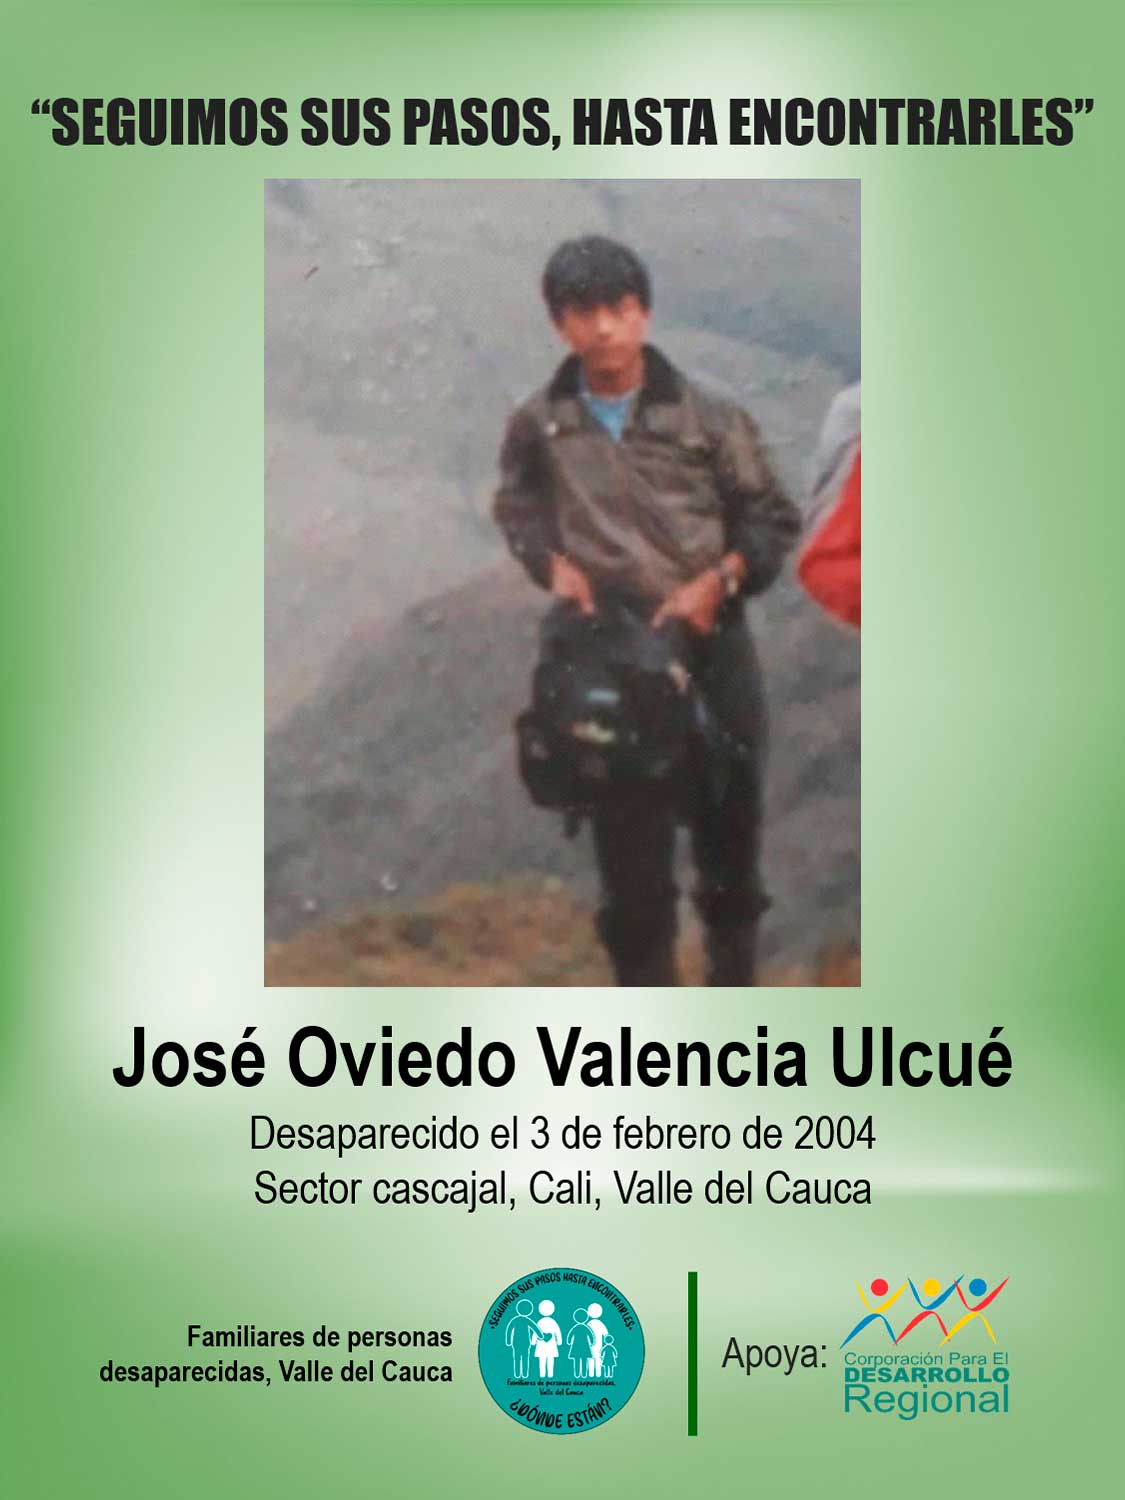 José Oviedo Valencia Ulcué